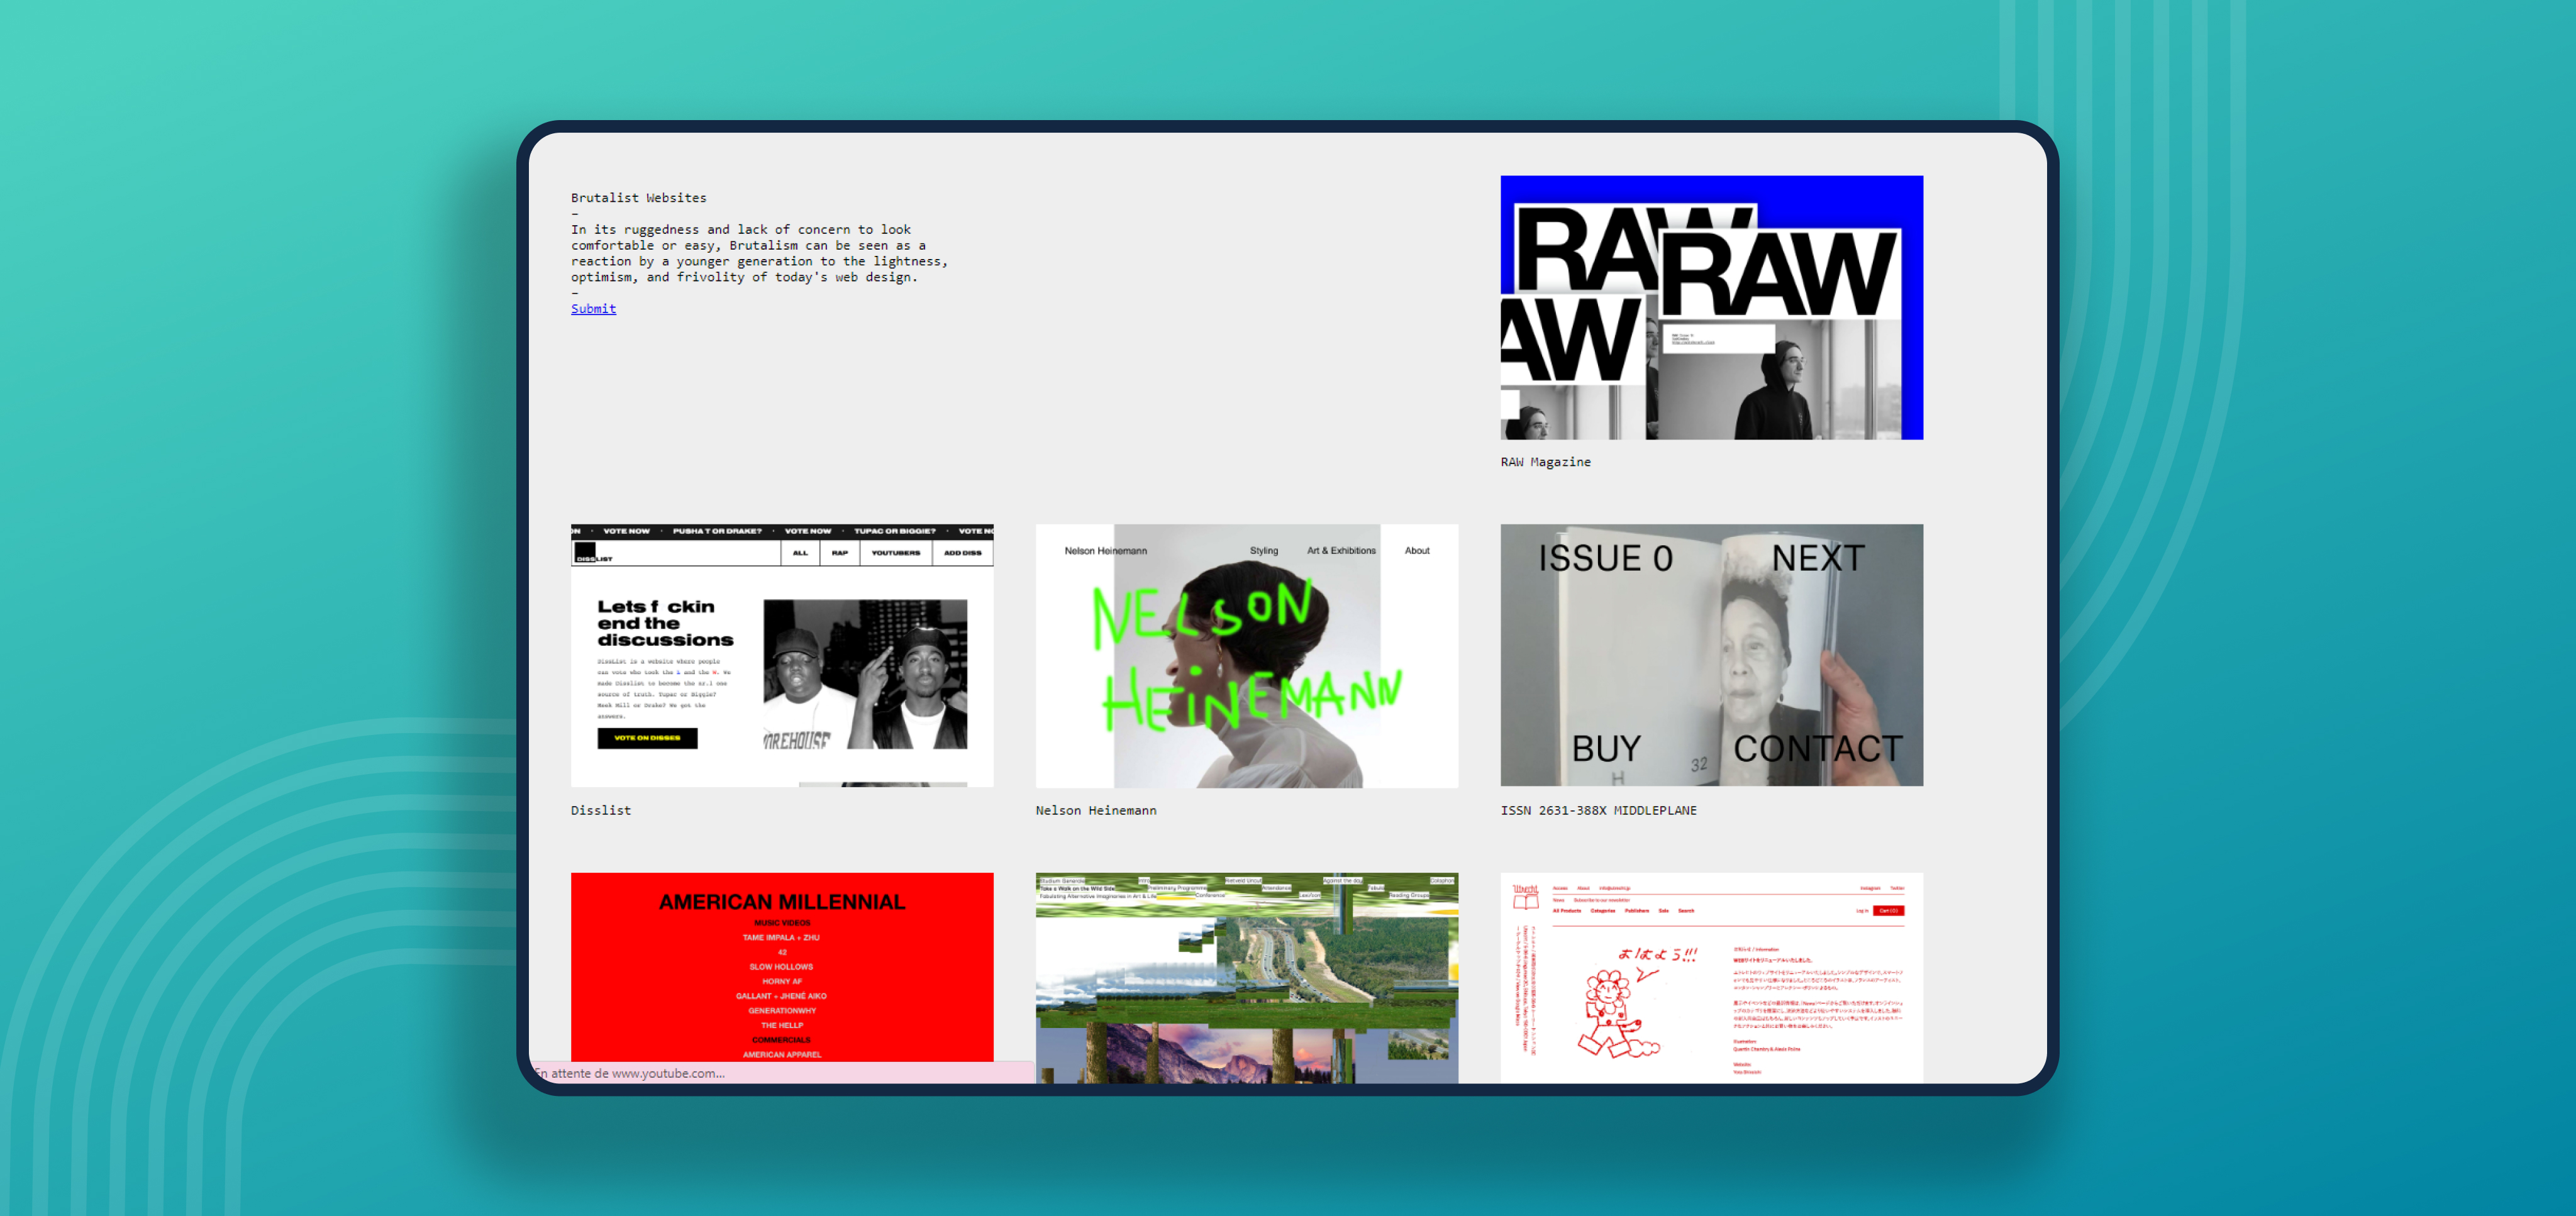 Le site d'inspiration en webdesign Brutalist websites